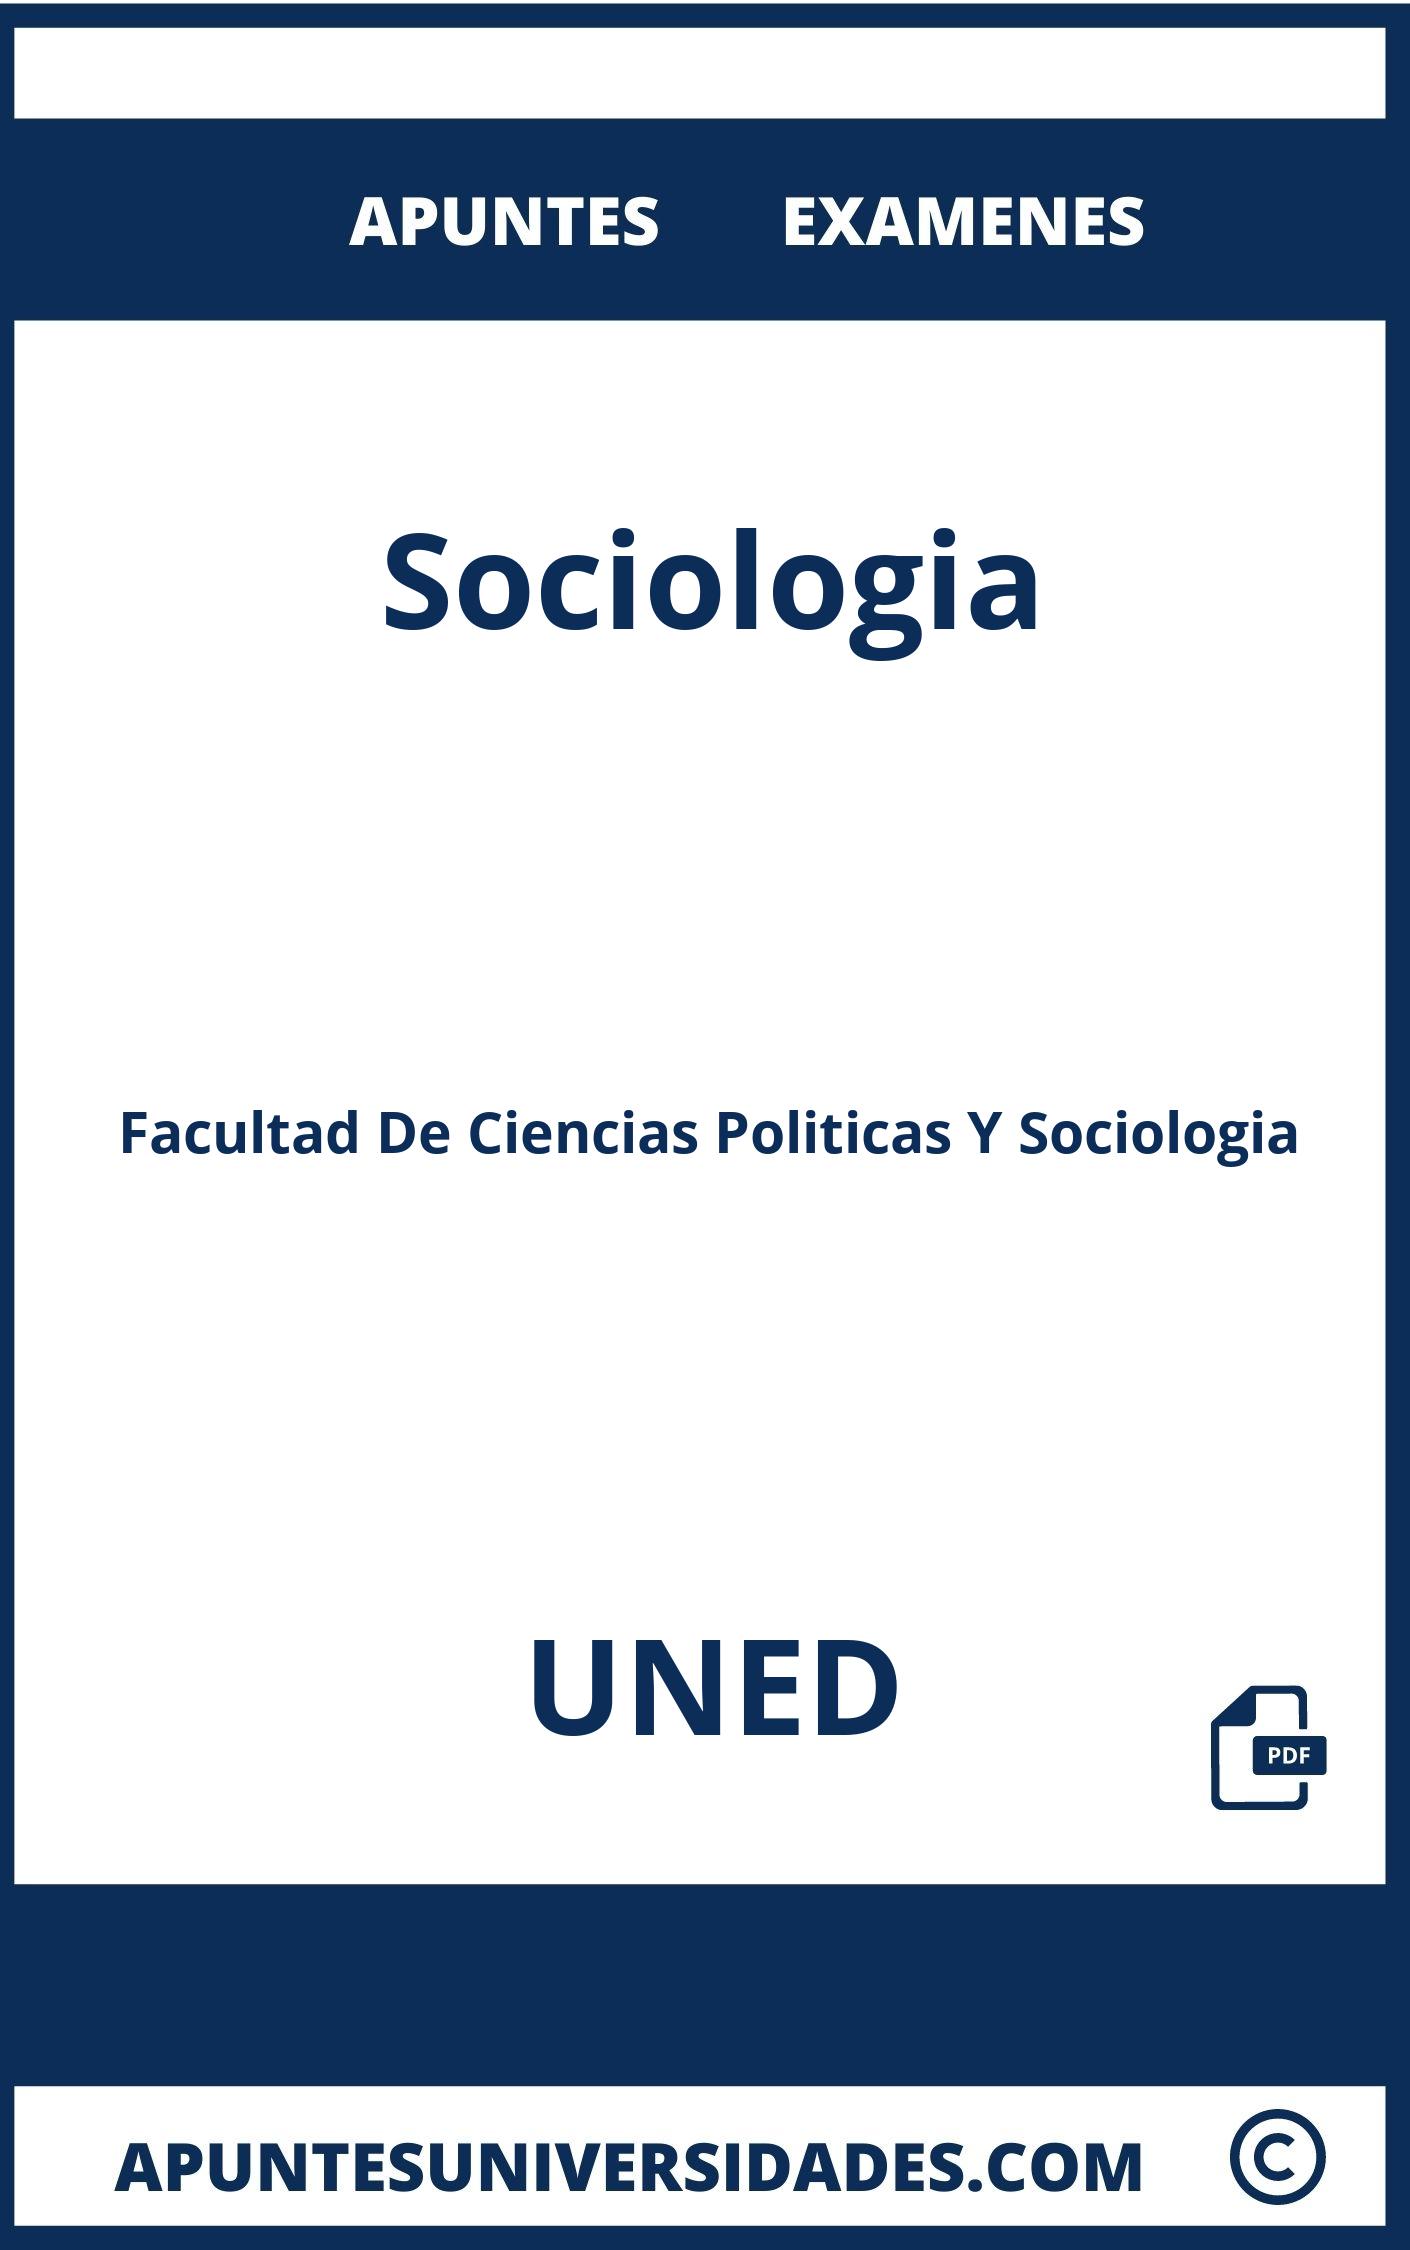 Examenes y Apuntes Sociologia UNED